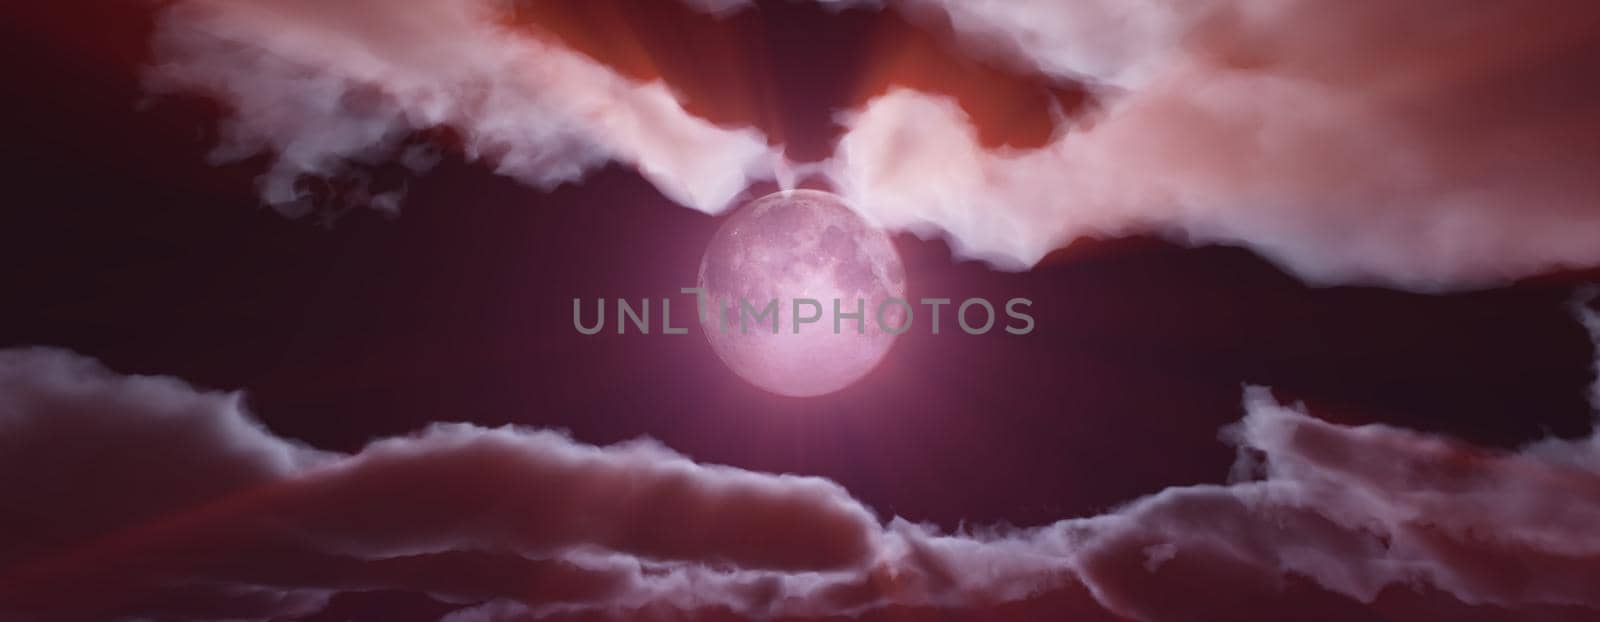 full moon at night cloud sky, 3d render illustration